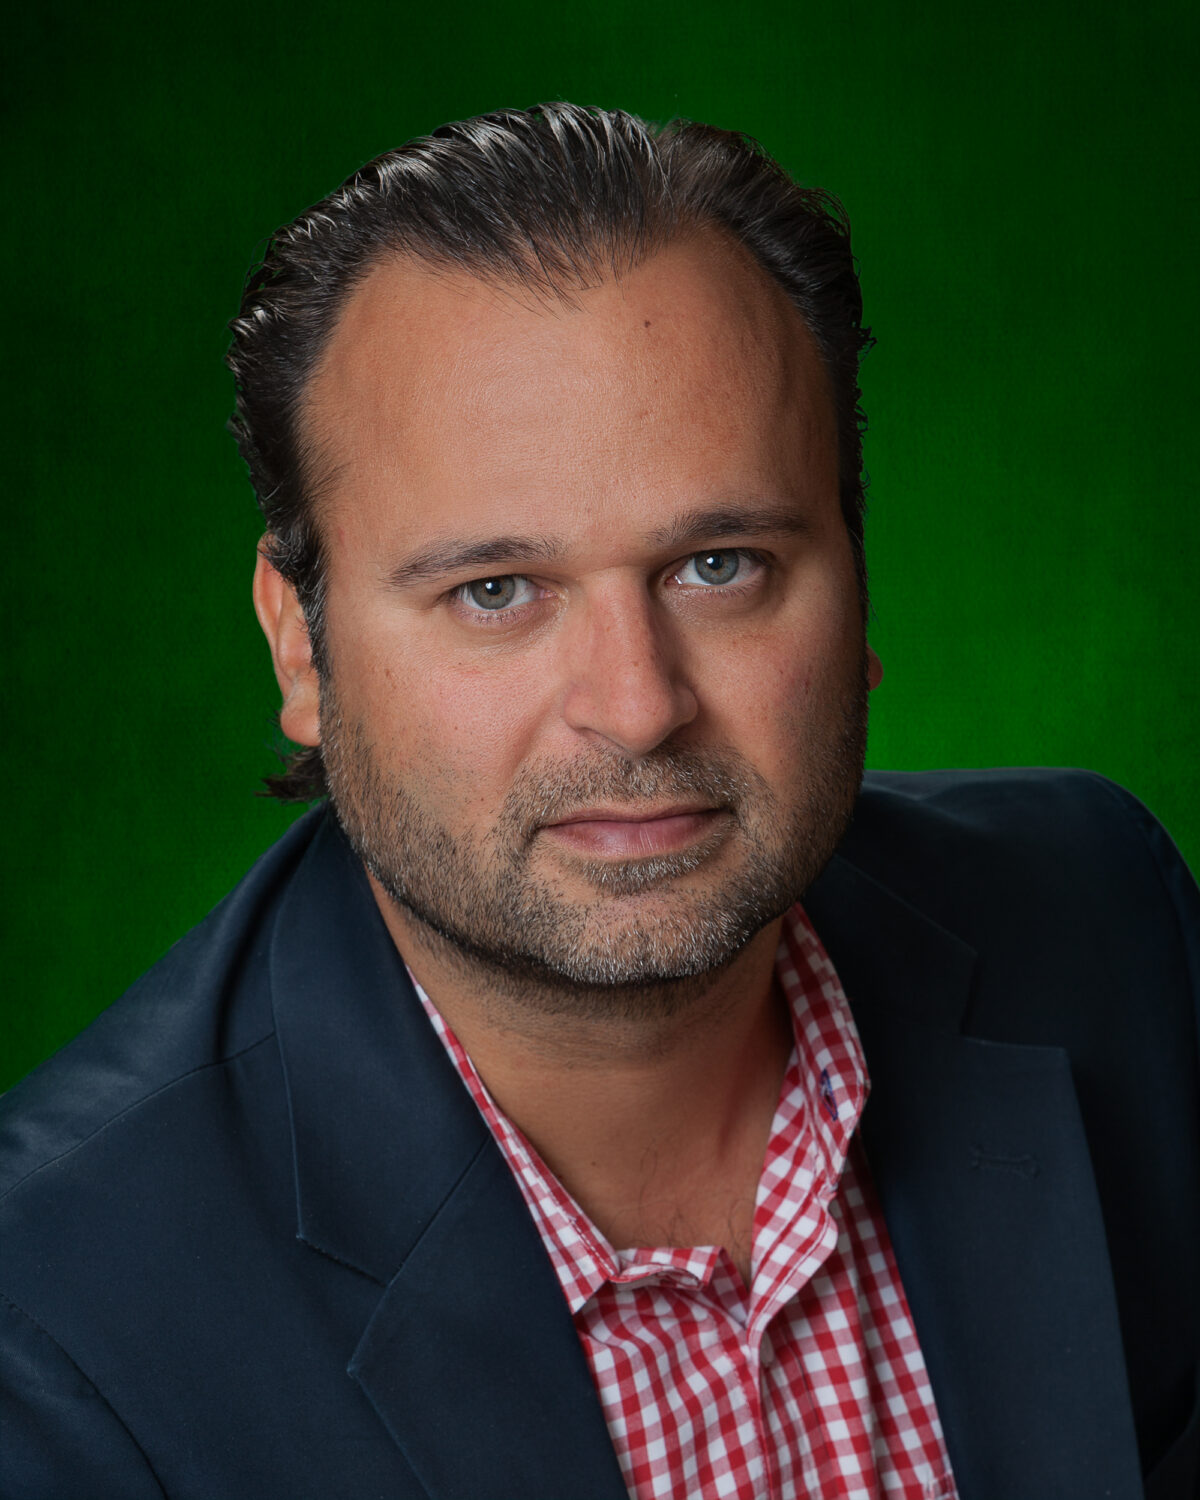 Felix Palau, Heineken Brand Regional Director at Global Marketing Americas Heineken